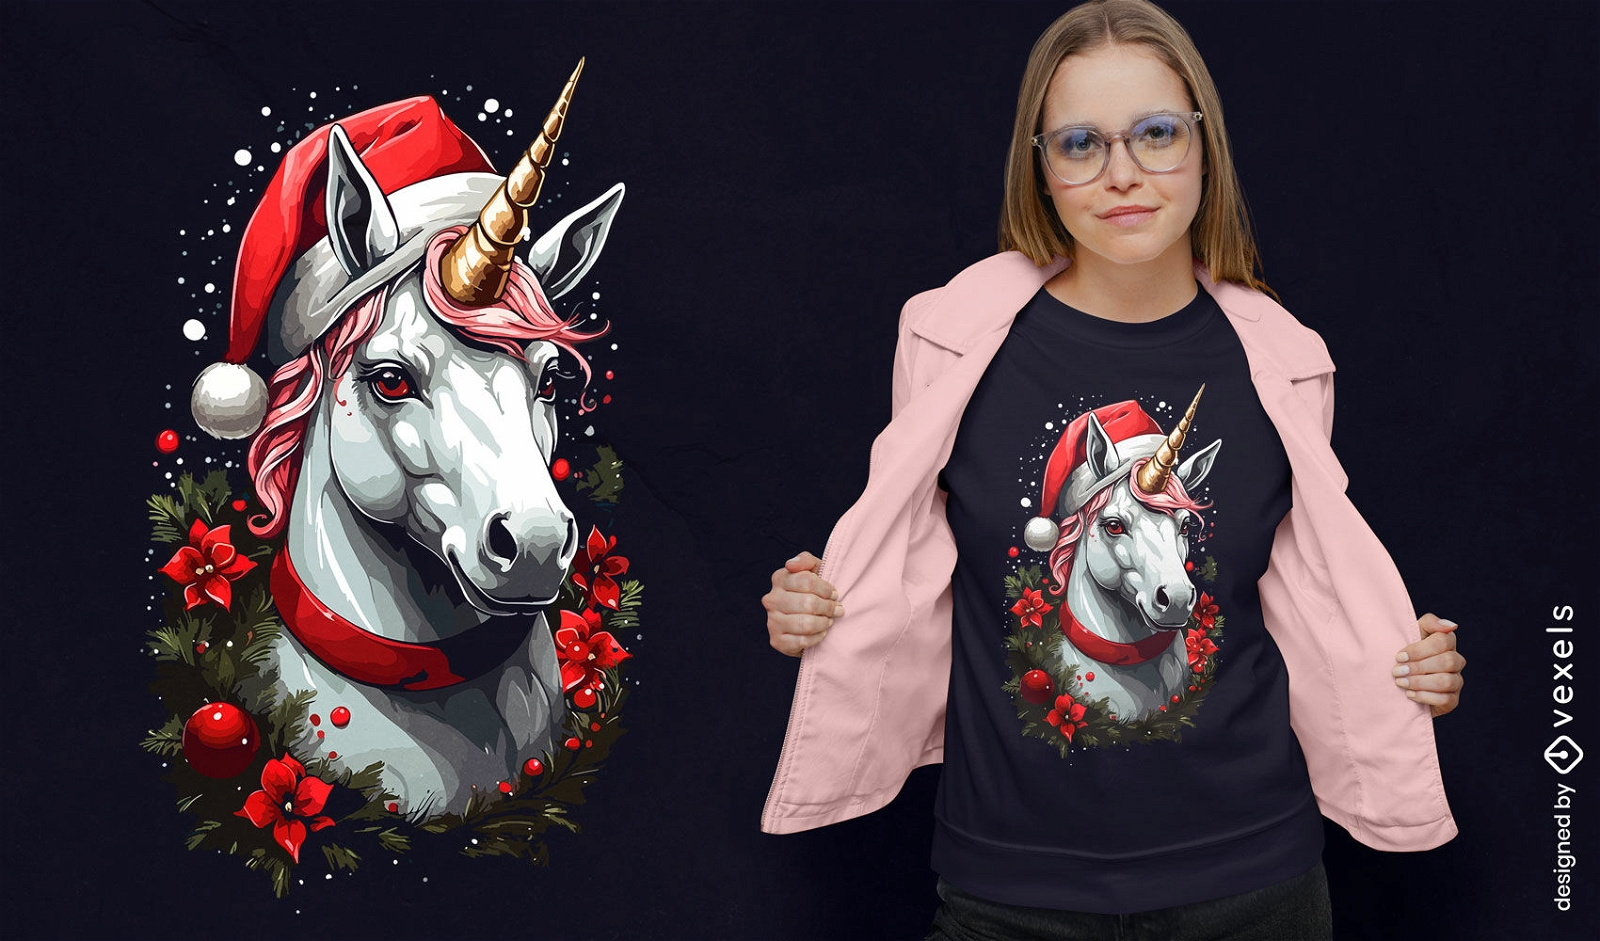 Diseño de camiseta de unicornio con gorro navideño.